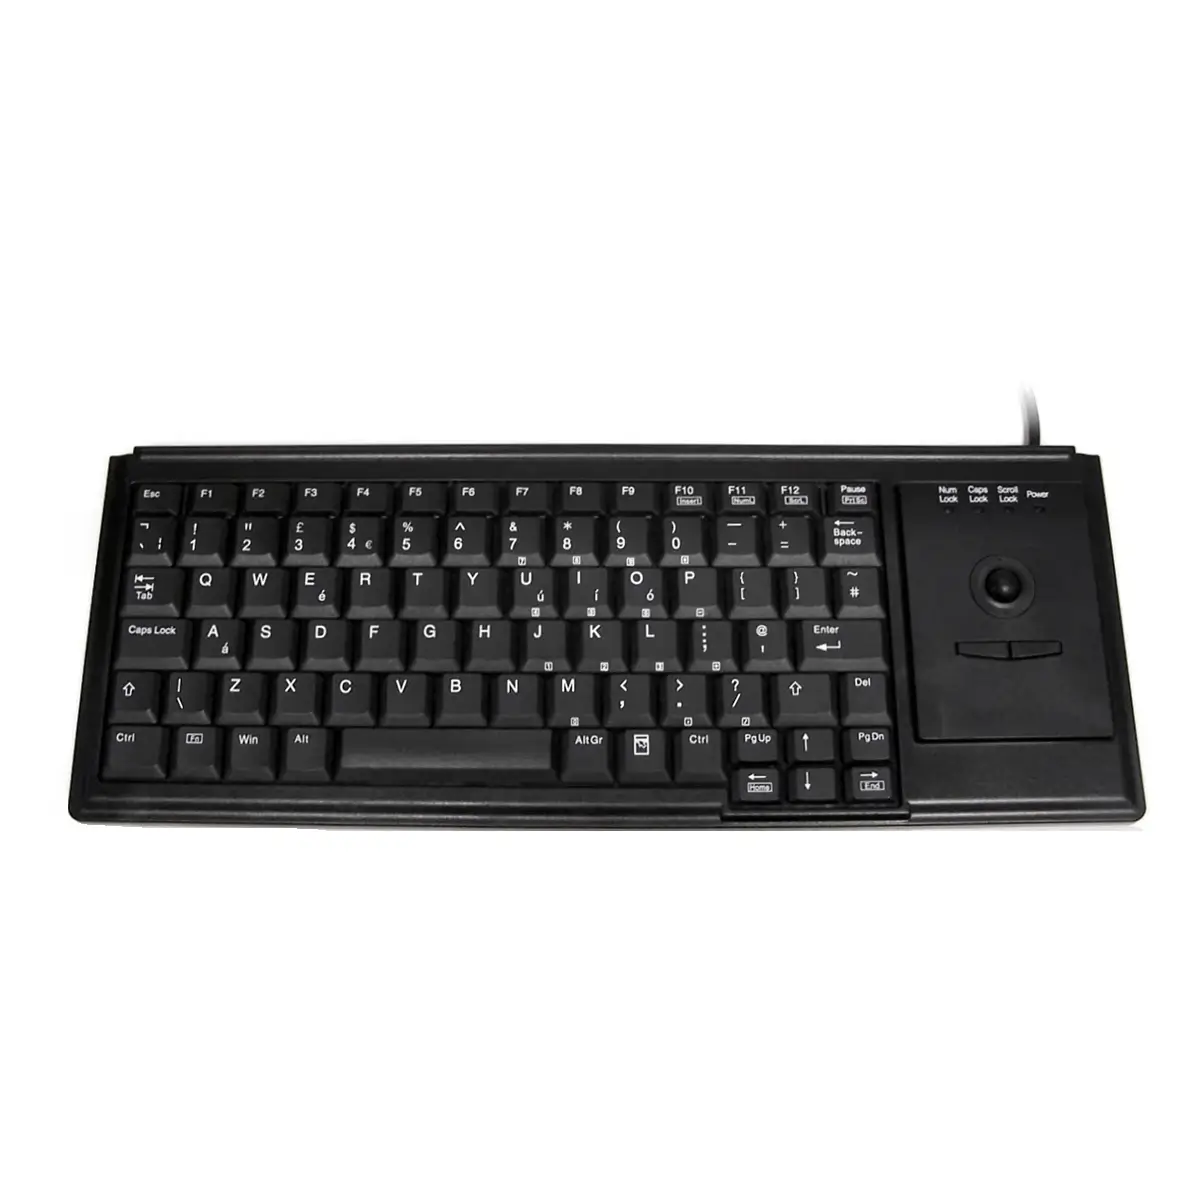 Ceratech K82D Keyboard Black